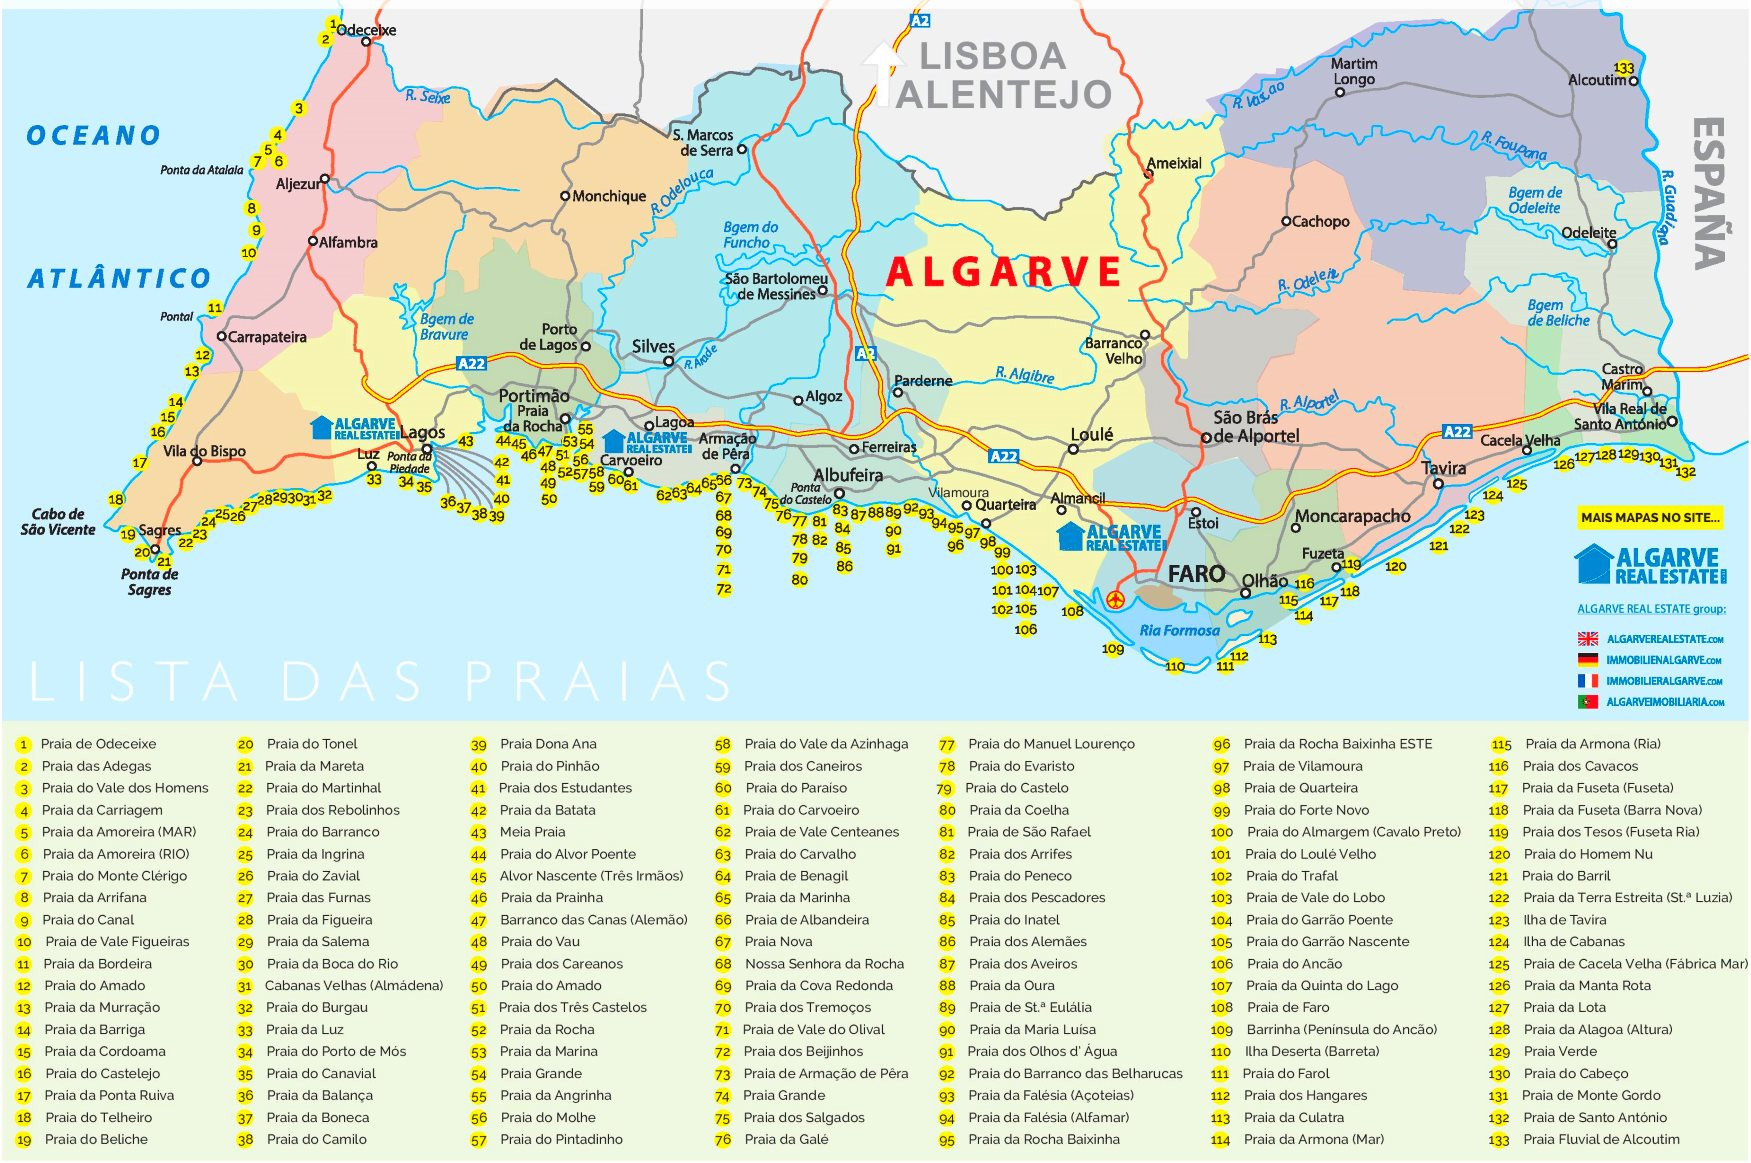 Algarve beaches map